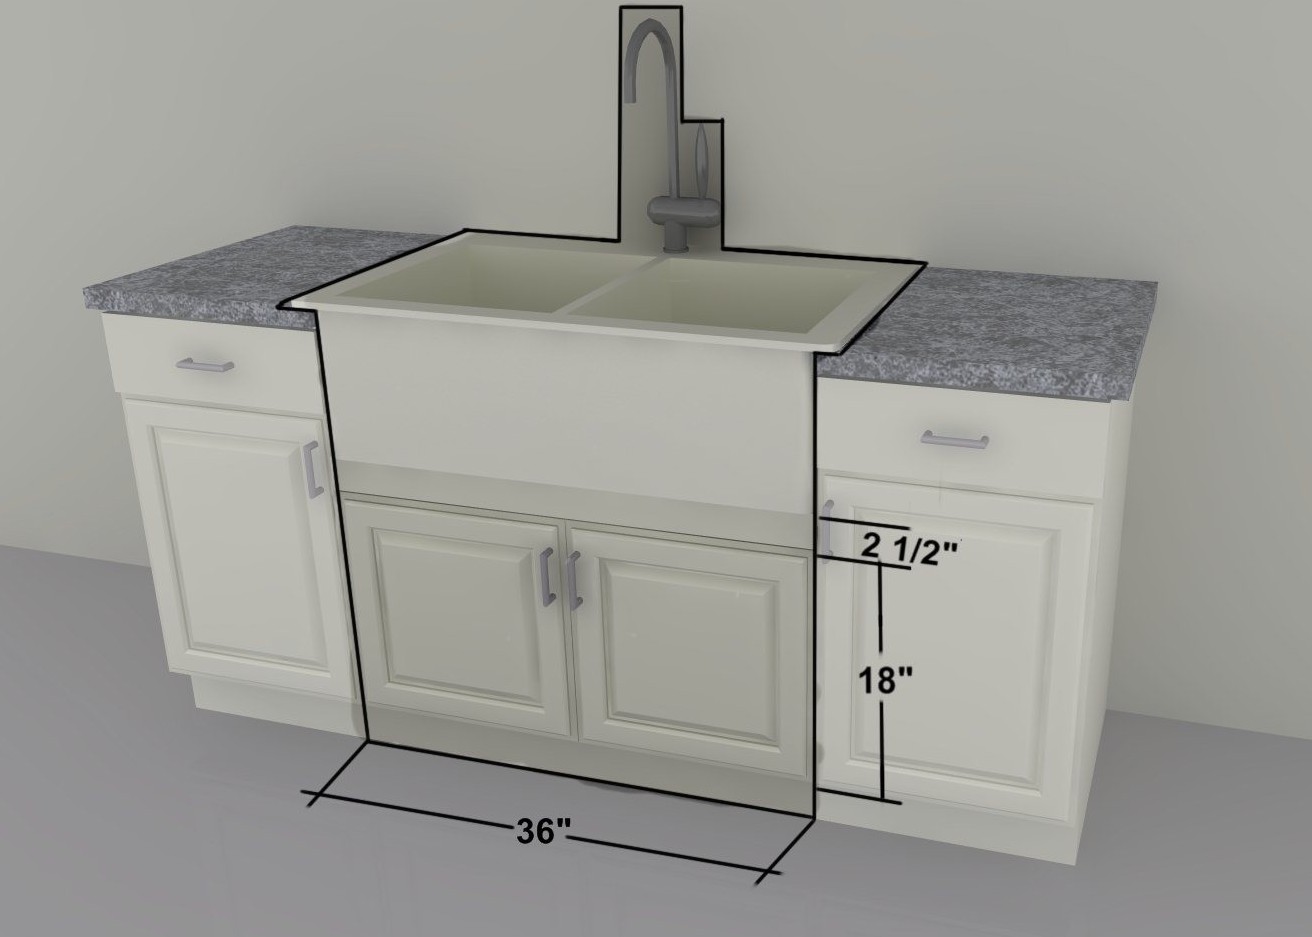 standard kitchen sink basin cabinet